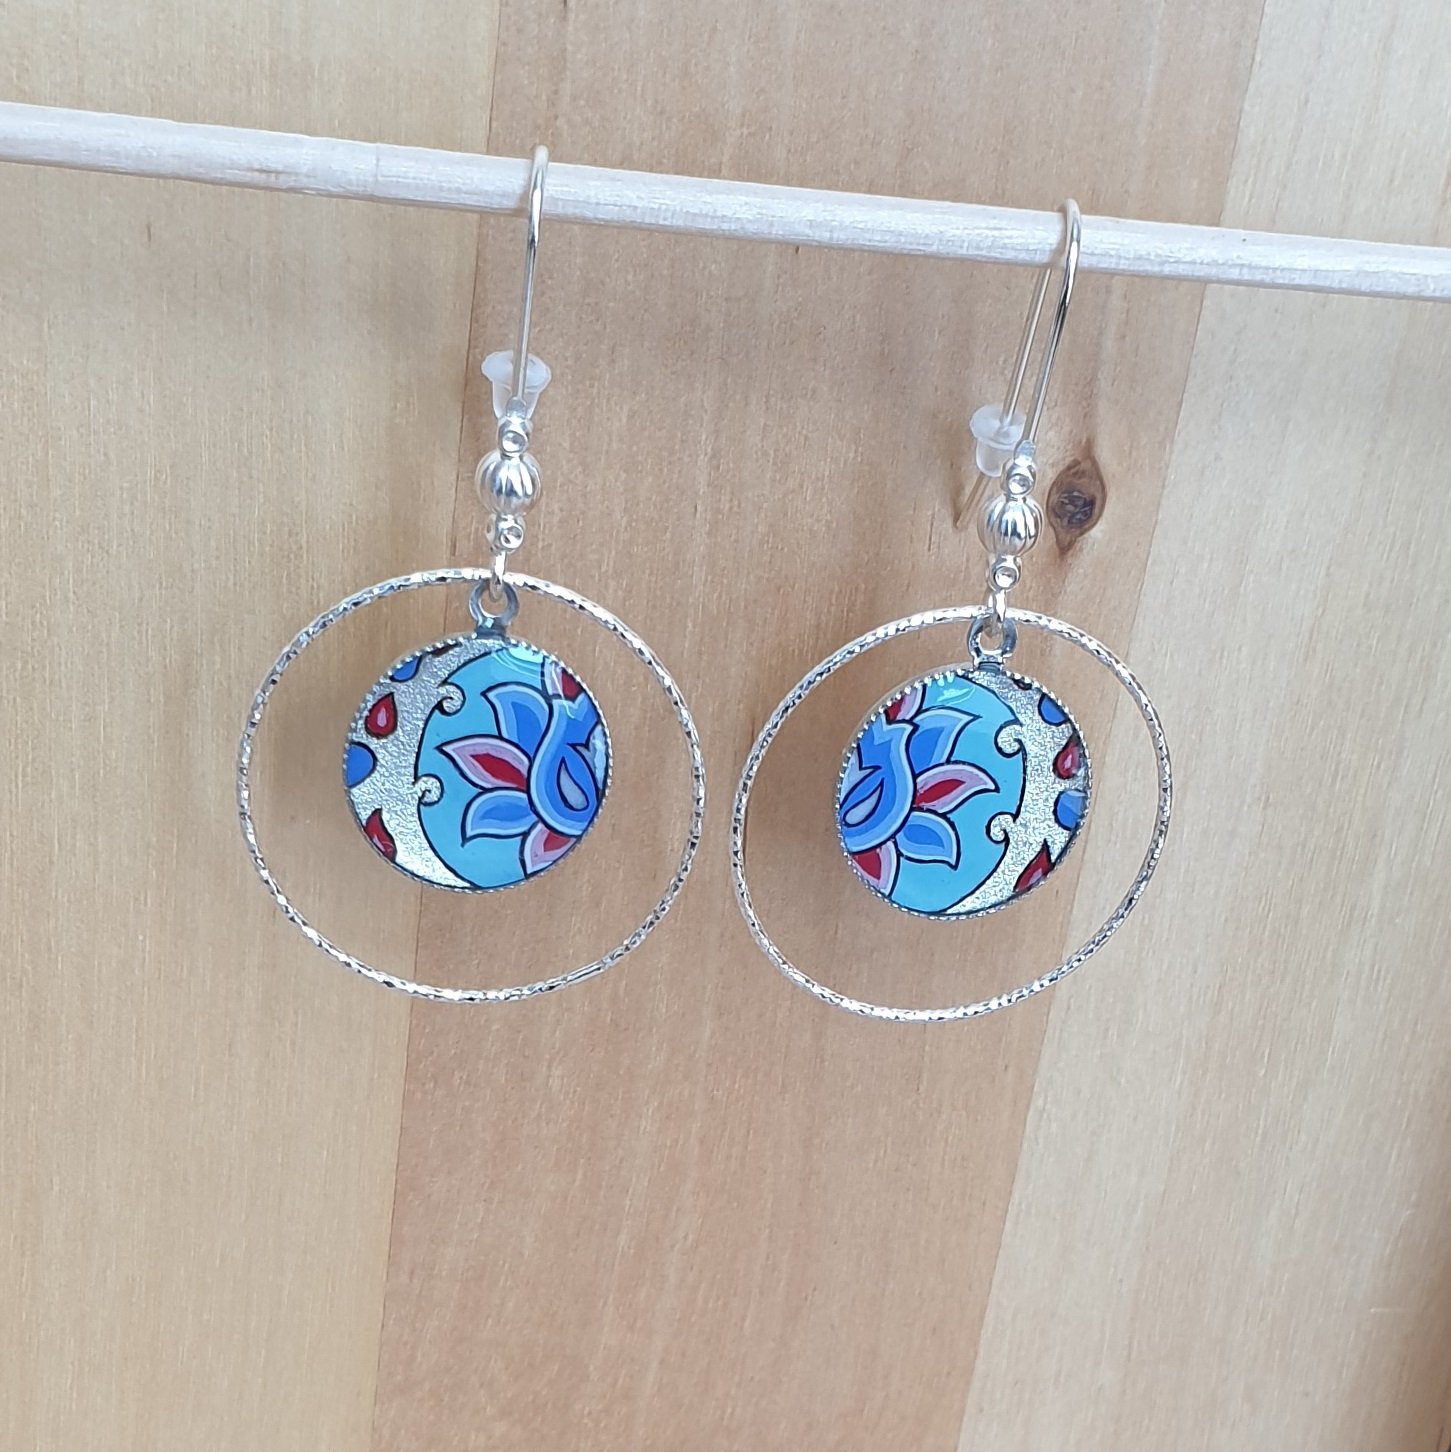 Boucles d'oreille enluminées fleur et arabesque vert/argenté/bleu/rosé